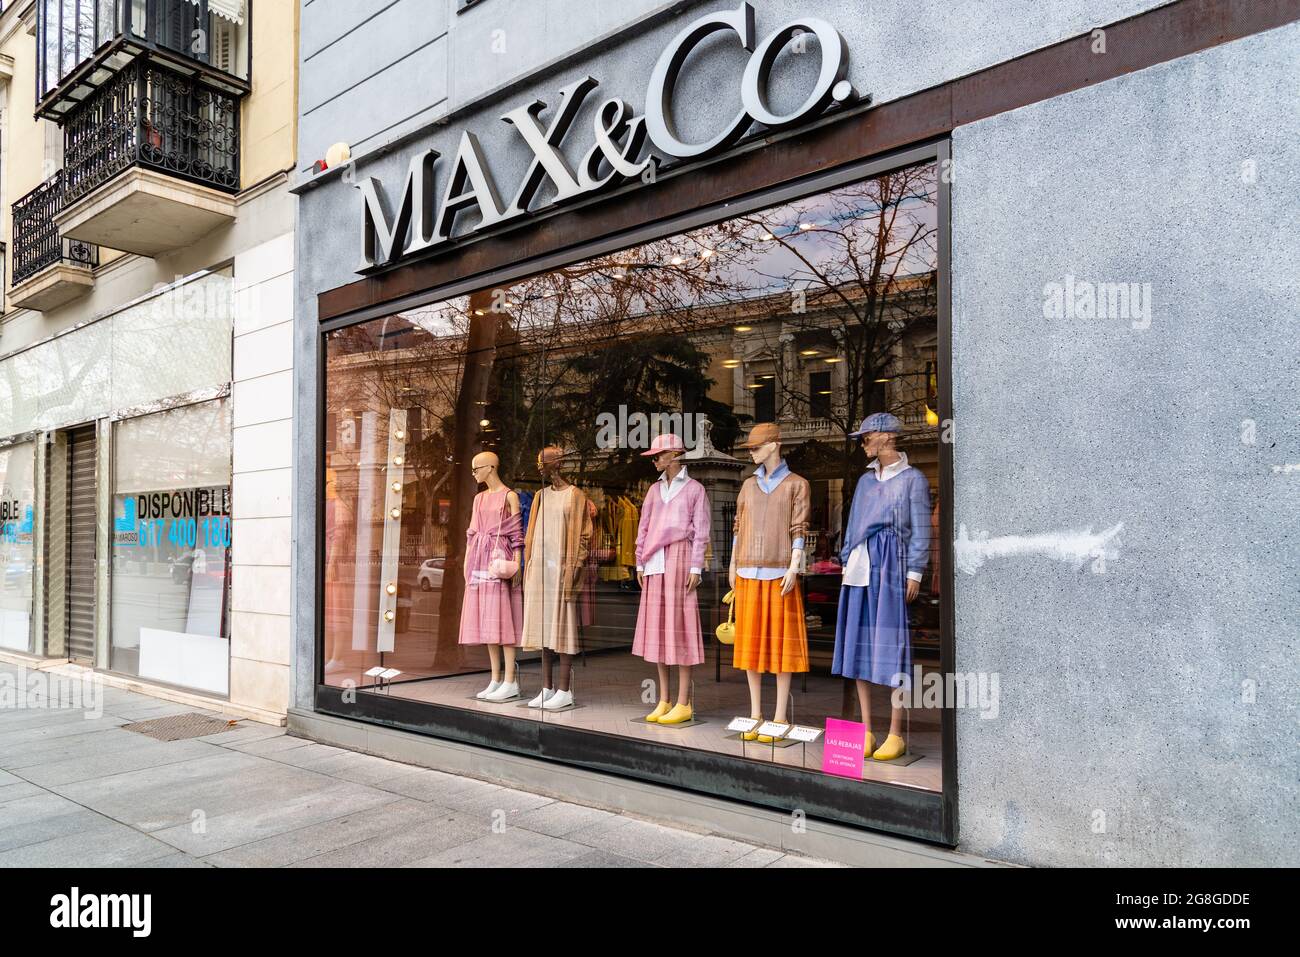 Madrid, Espagne - 7 mars 2021 : vitrine de la mode dans la rue Serrano. Salamanca District est bien connu pour être l'une des régions les plus riches avec un hig Banque D'Images